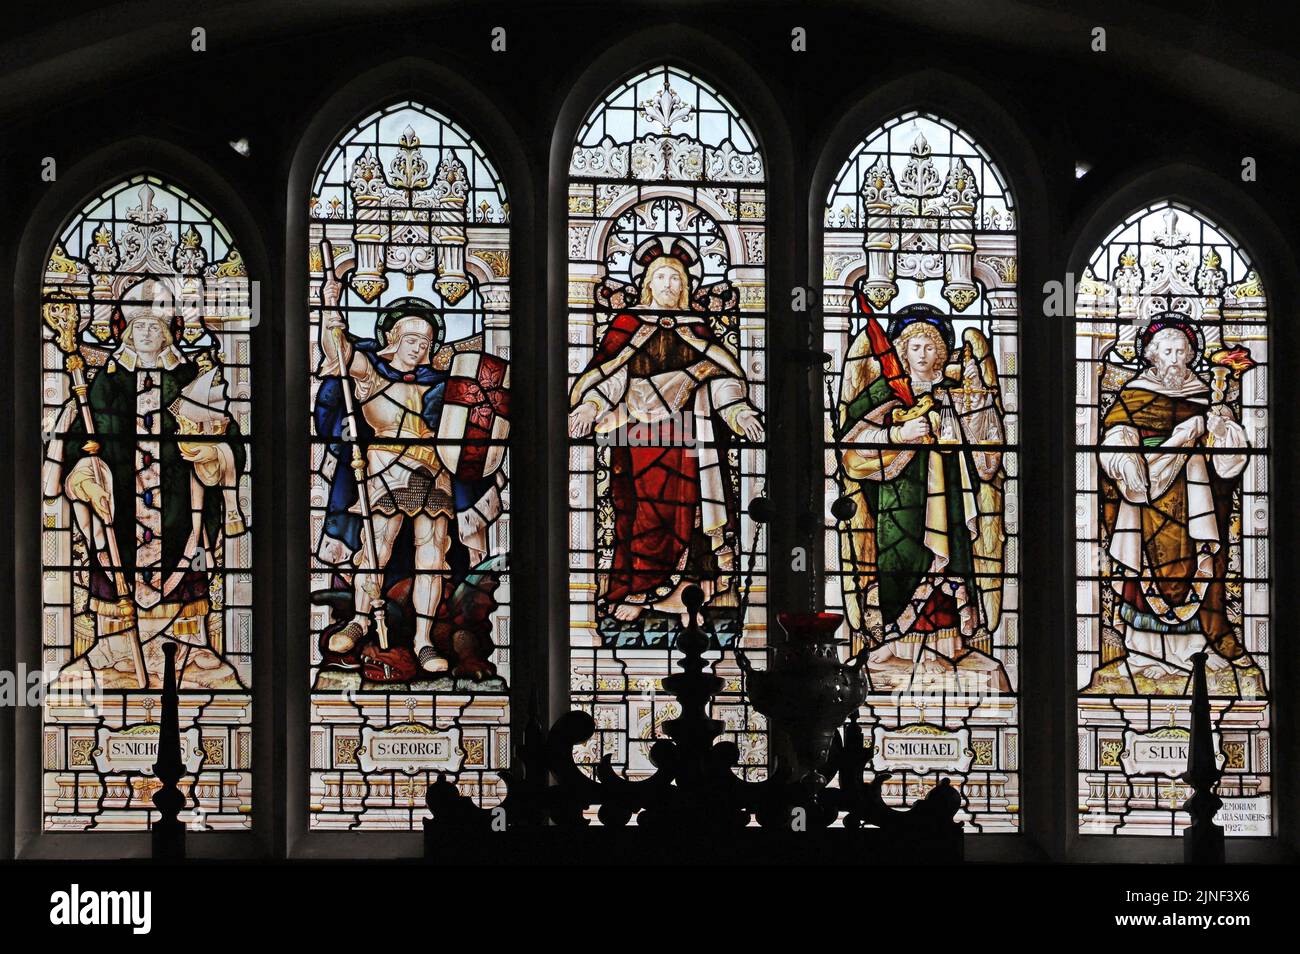 Vitral por Percy Bacon & Brothers representando a Cristo Consoler, y los Santos Nicolás, George, Michael & Luke, All Saints Church, Northampton, Foto de stock